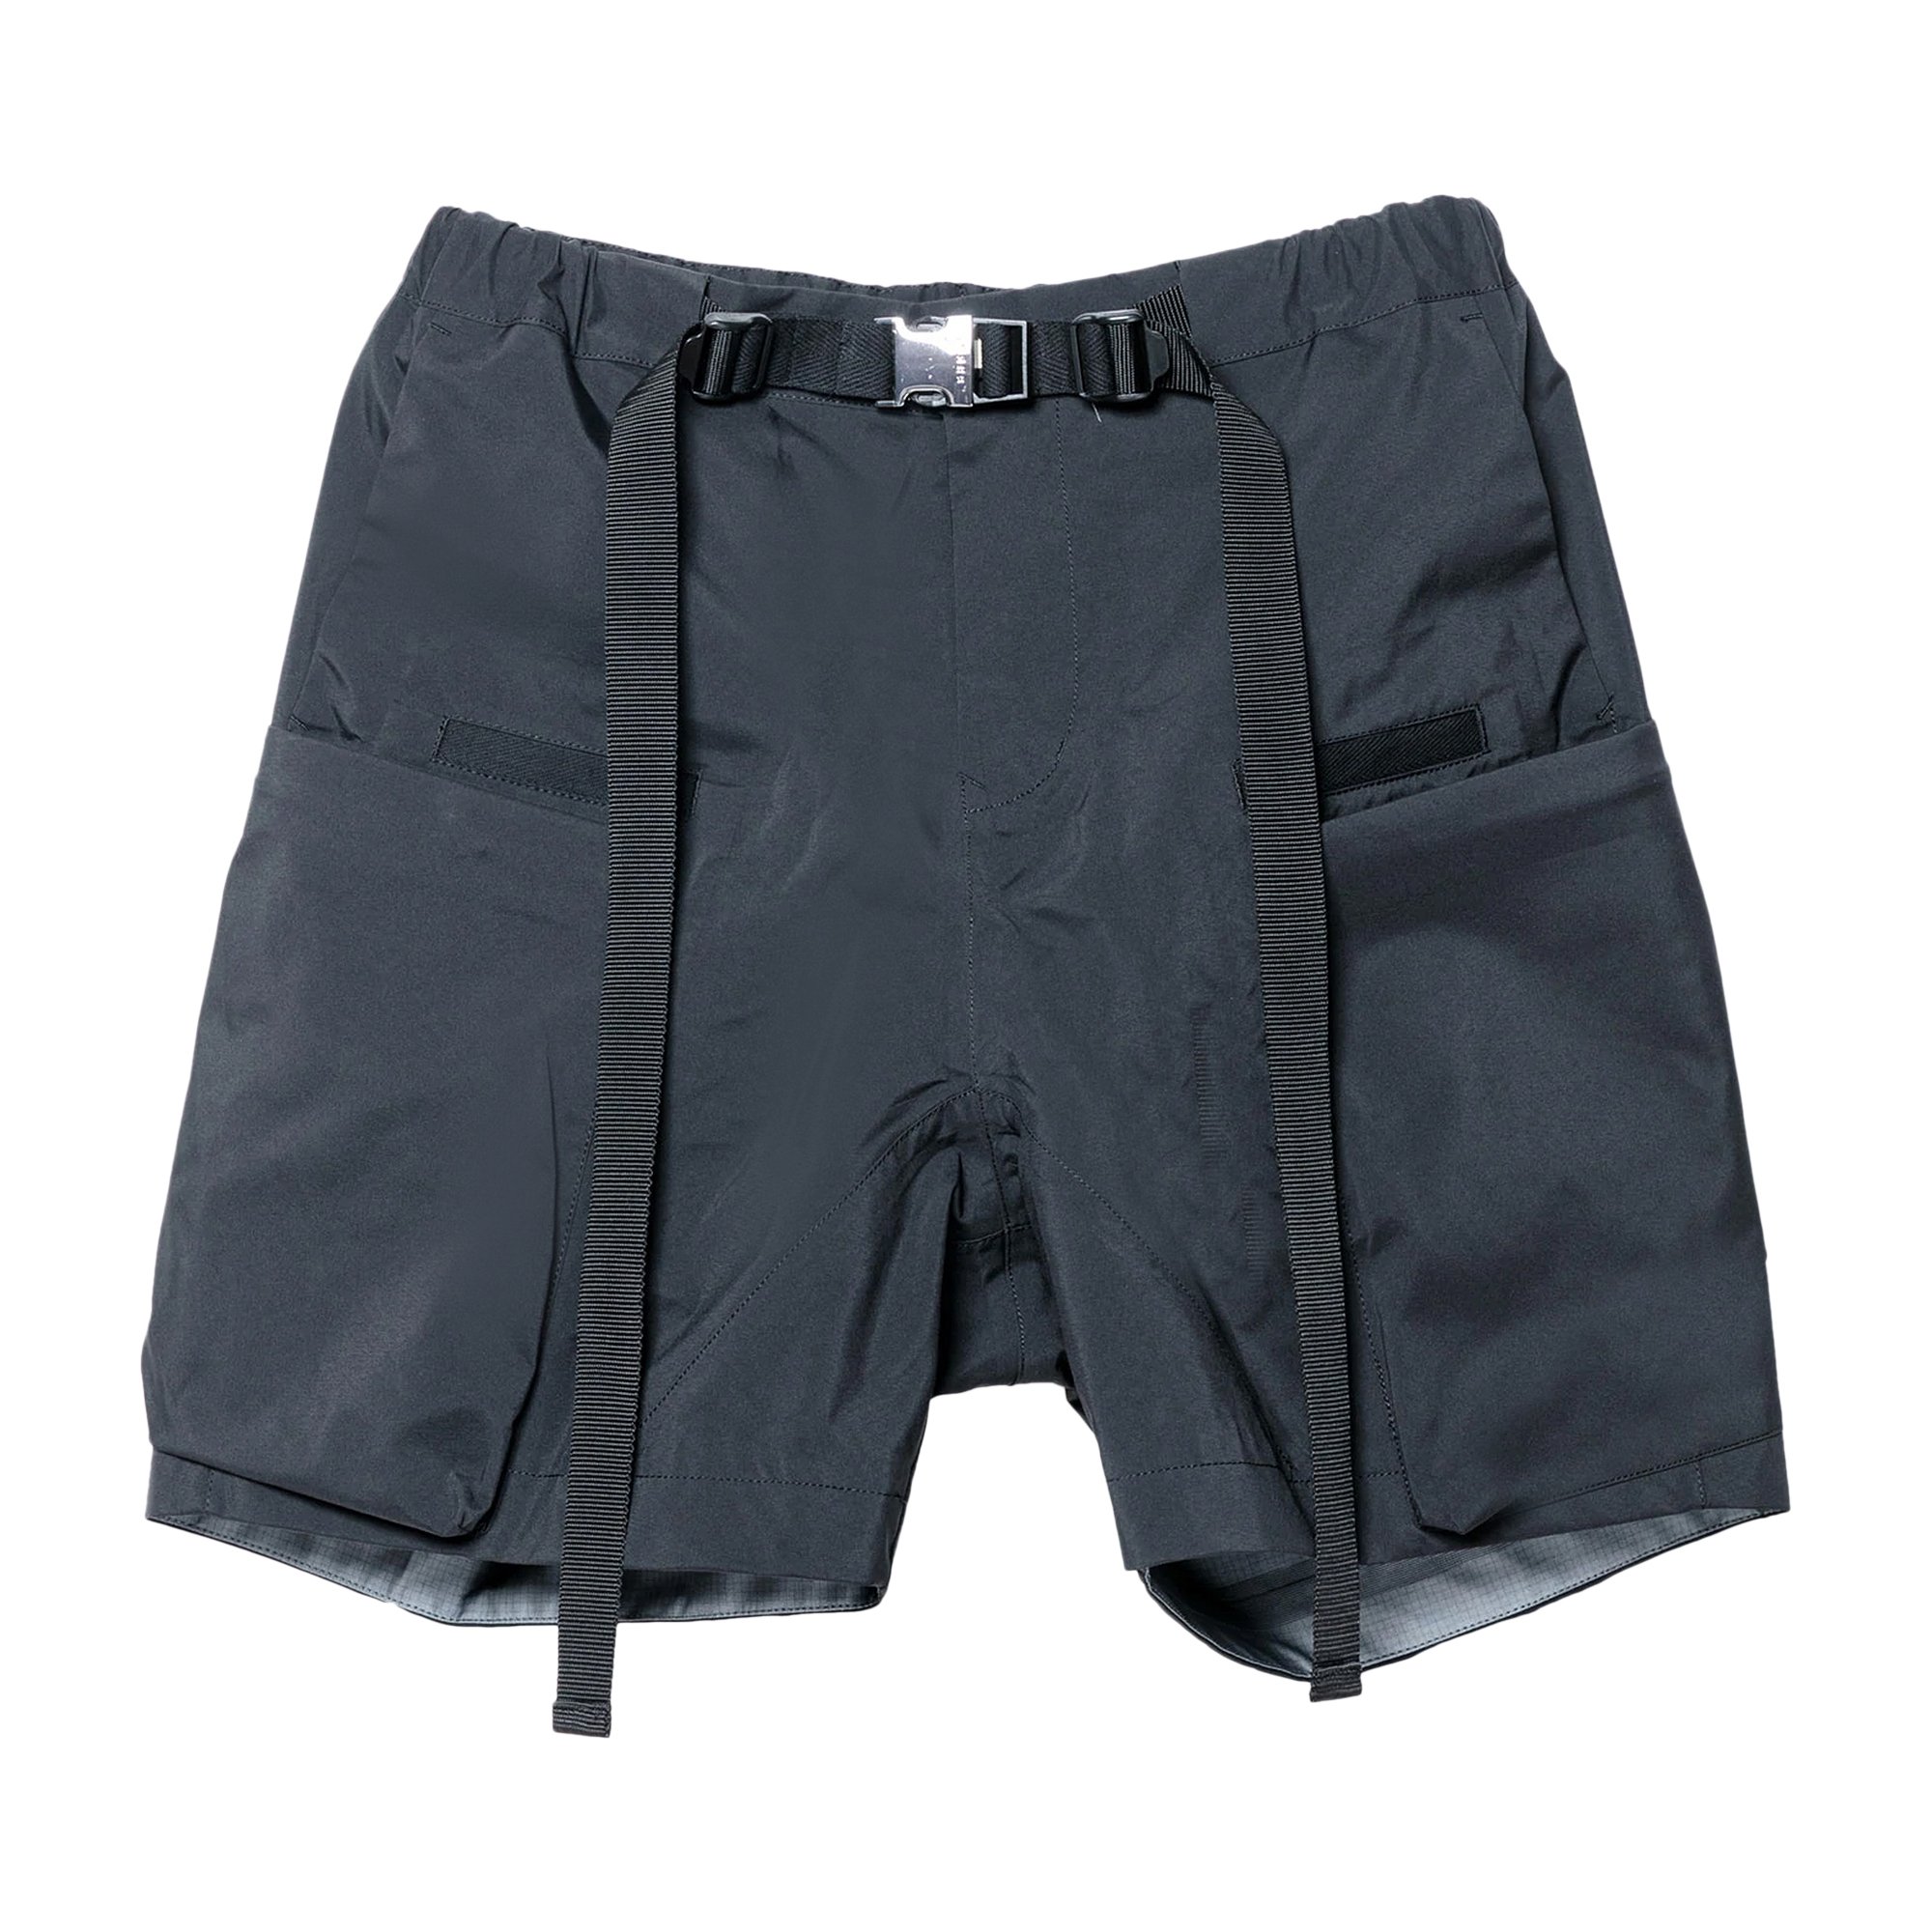 Buy Sacai x Acronym Shorts Black 'Black' - 22 02763M 001 | GOAT UK